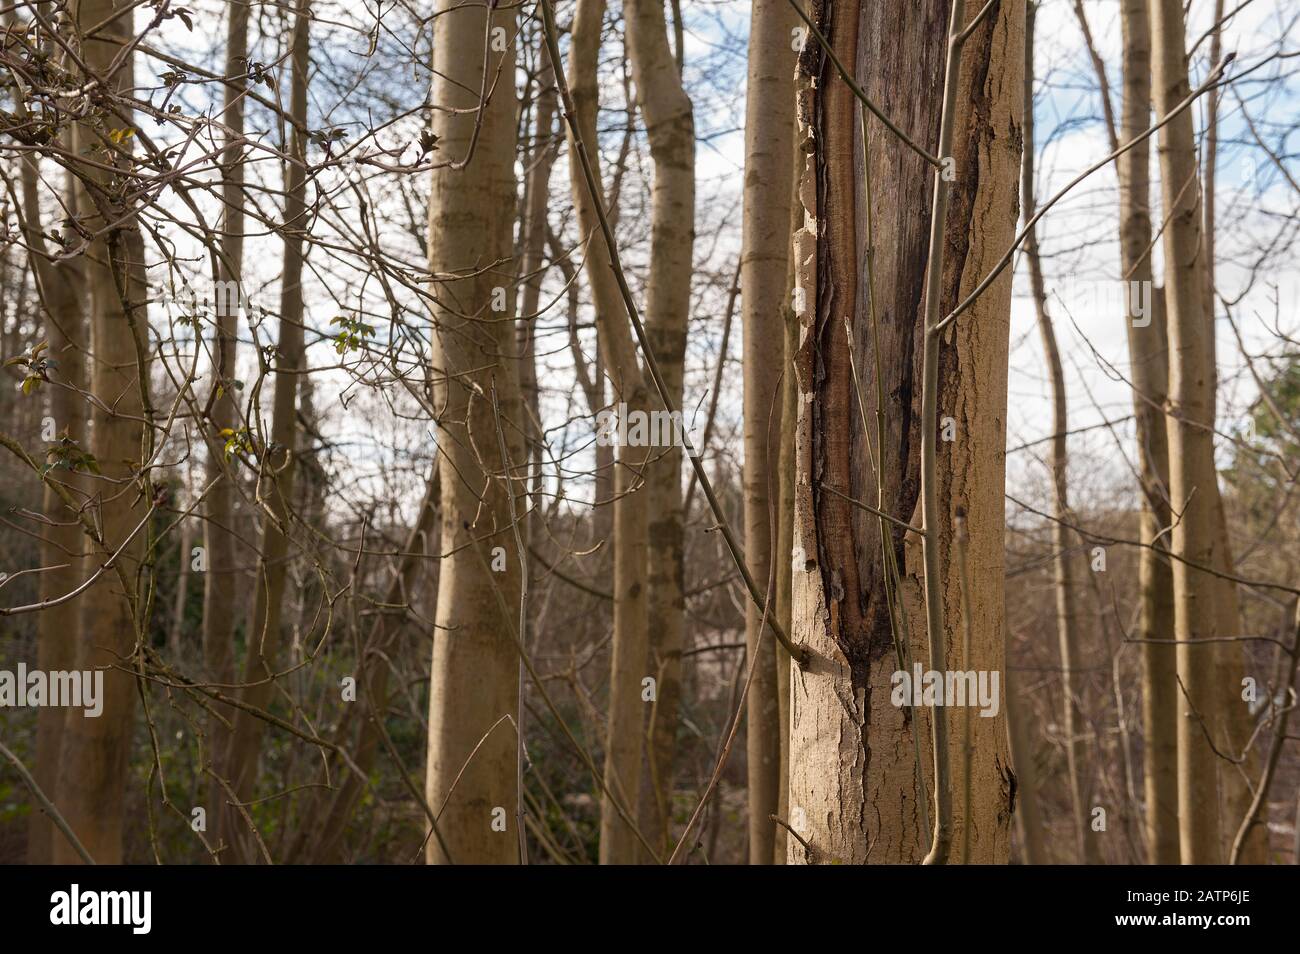 Reifer Aschebaum, der an Krankheit leidet und sich mit Rinde zurückzieht, die beginnt, den Stamm zu einem jungen 14 m hohen Baum zu schälen und reifen gekrümmter Stamm 25 m hoch Stockfoto